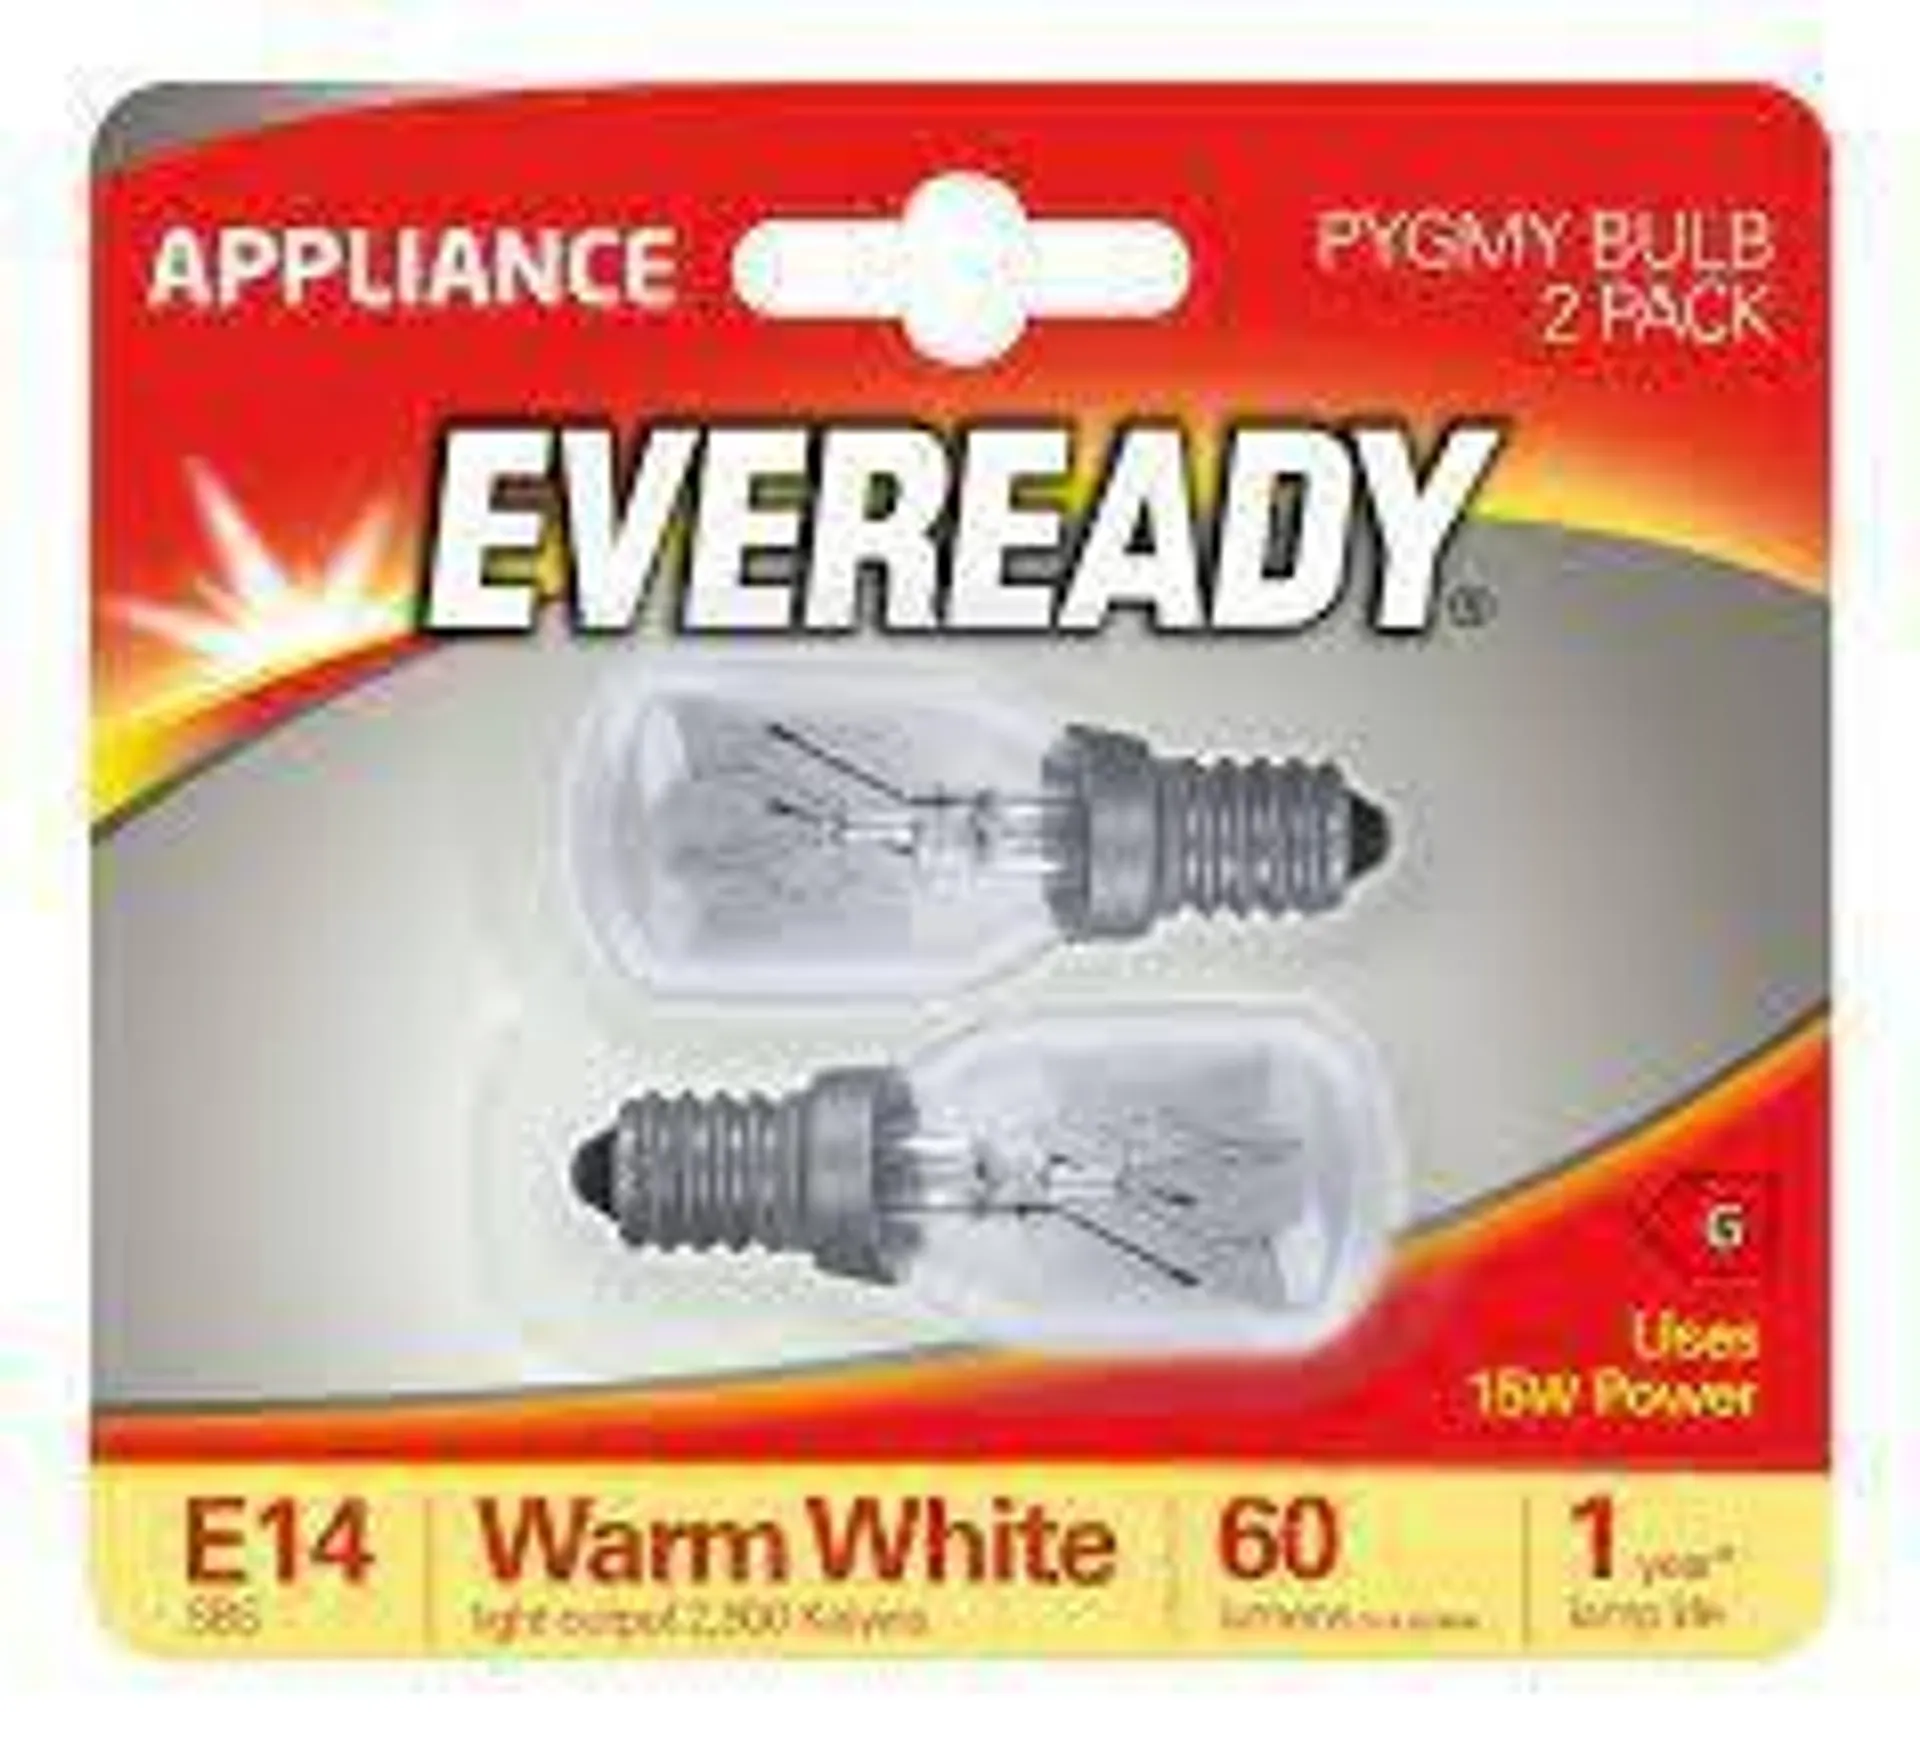 Eveready 15w Pygmy SES / E14 Bulbs